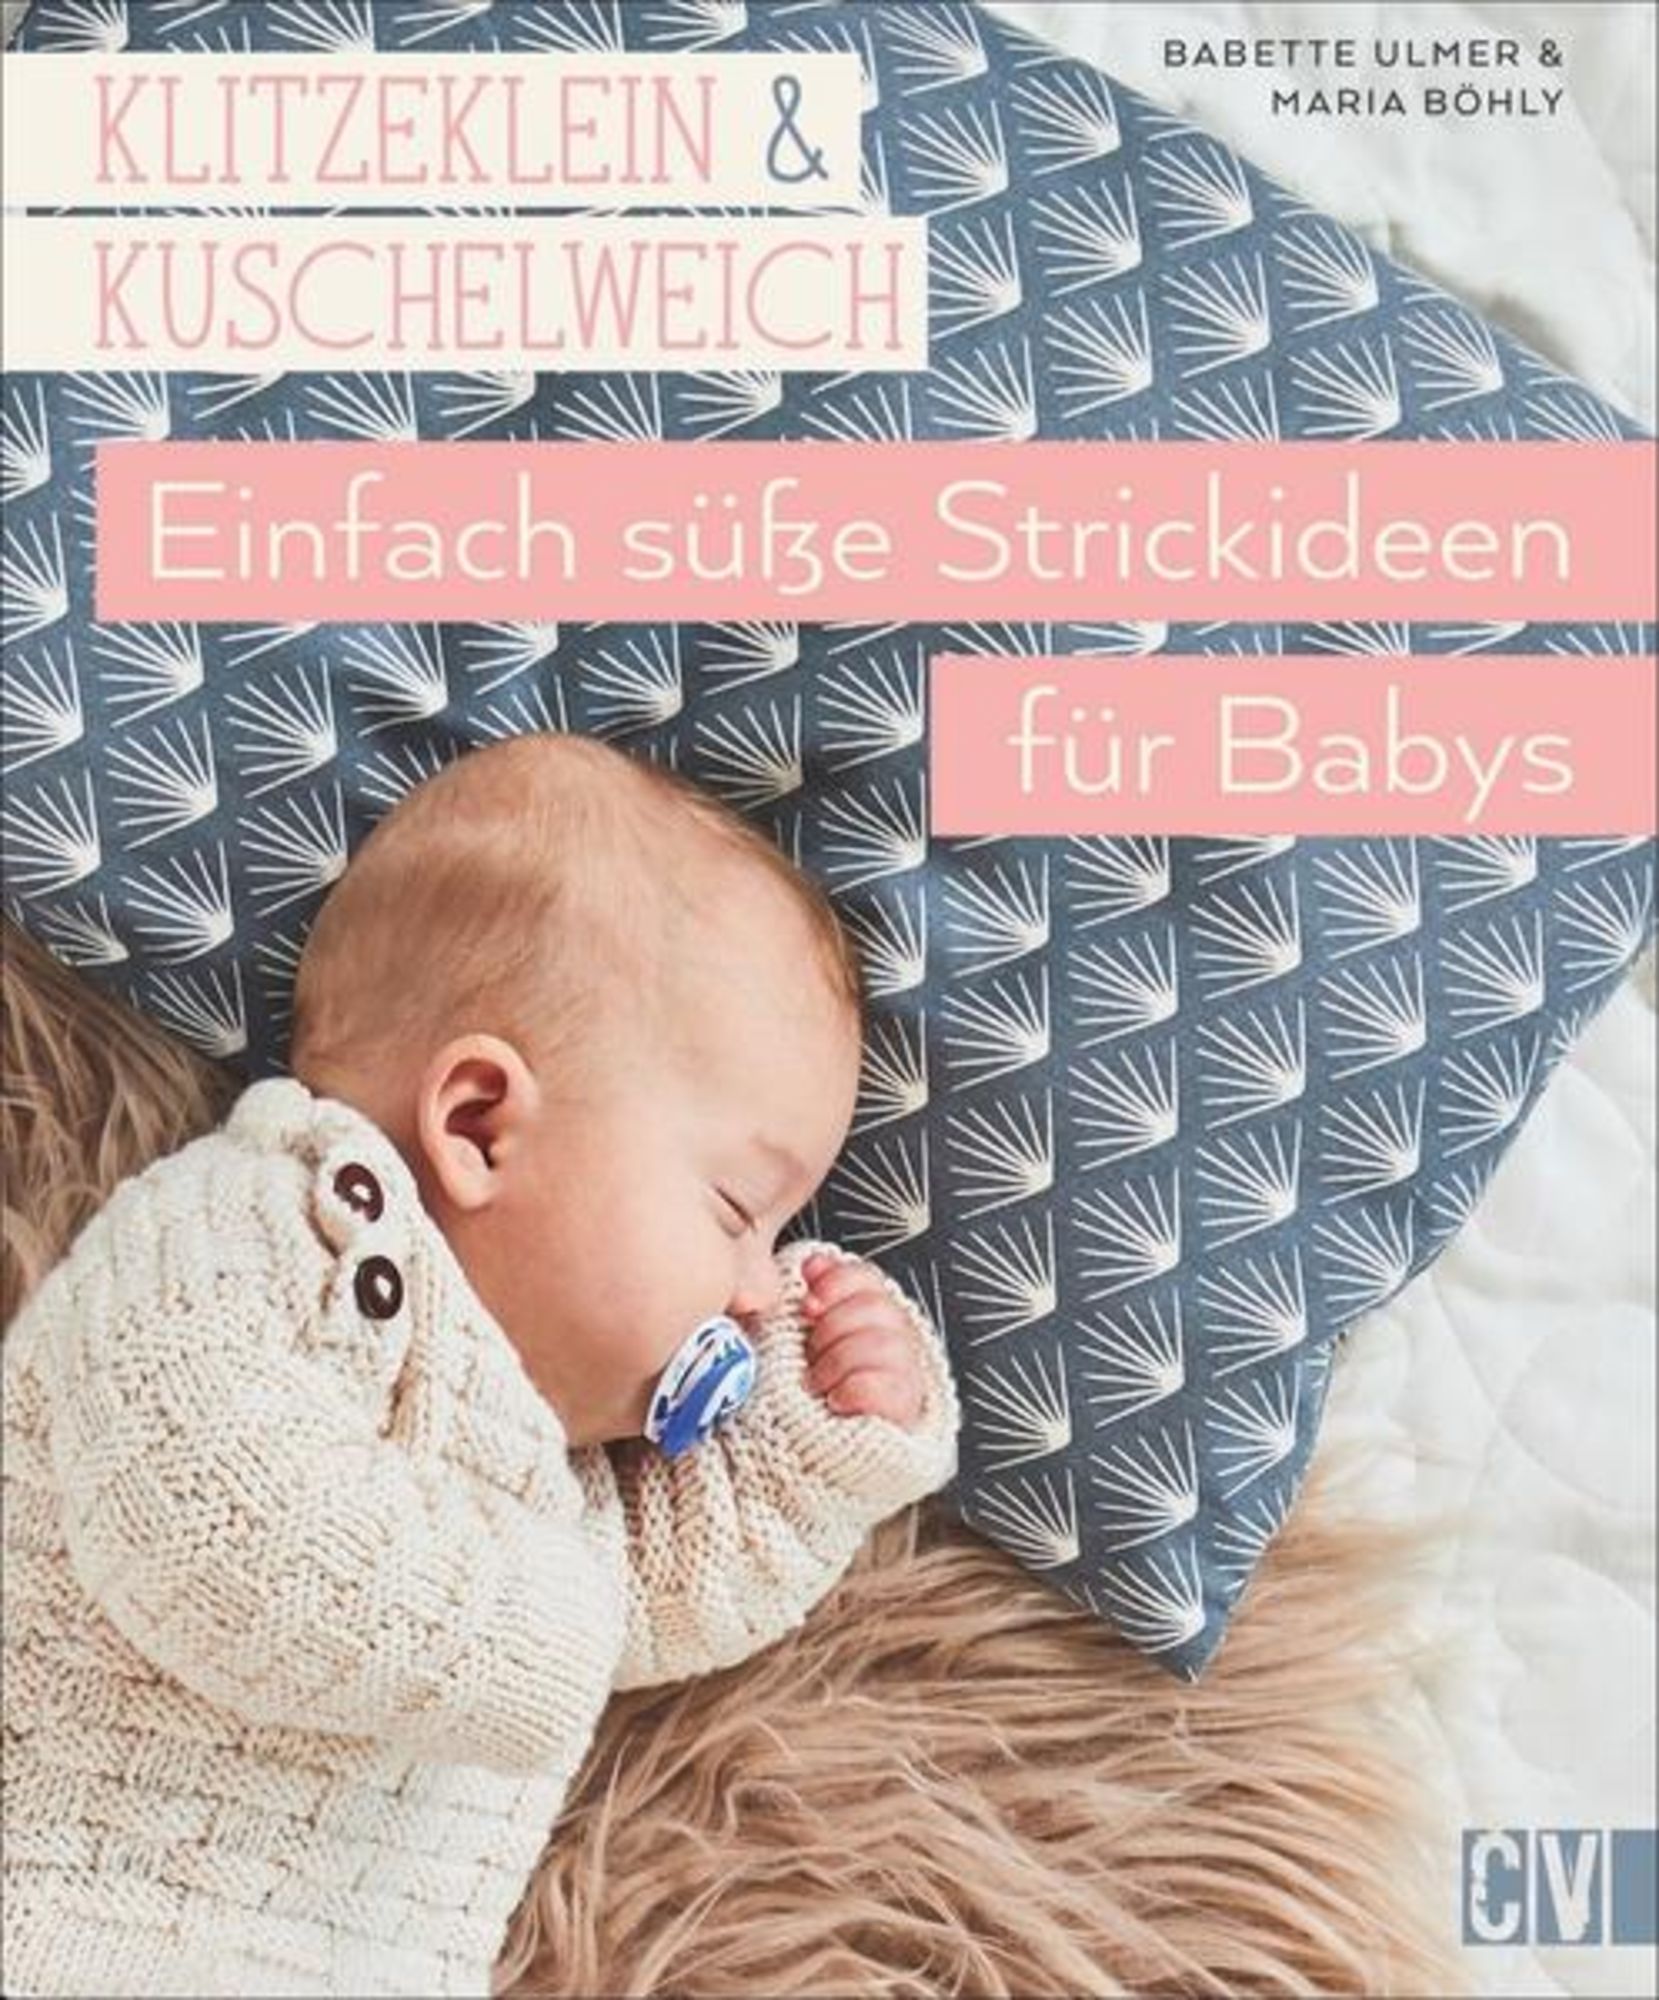 Klitzeklein & kuschelweich – Einfach süße Strickideen für Babys\' von  \'Babette Ulmer\' - Buch - \'978-3-8410-6539-1\'